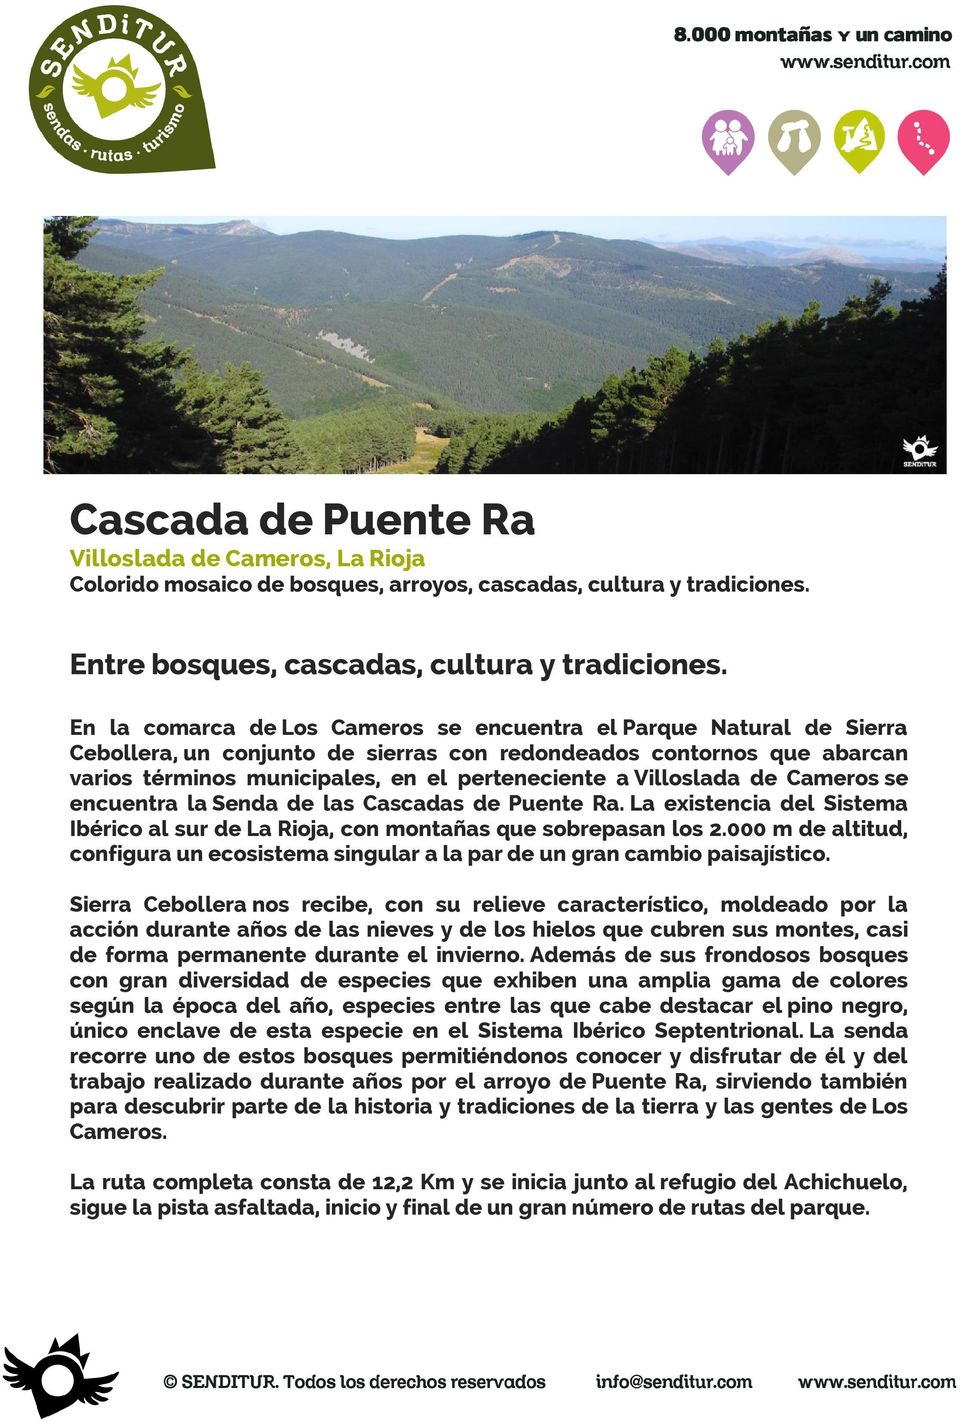 Villoslada de Cameros se encuentra la Senda de las Cascadas de Puente Ra. La existencia del Sistema Ibérico al sur de La Rioja, con montañas que sobrepasan los 2.